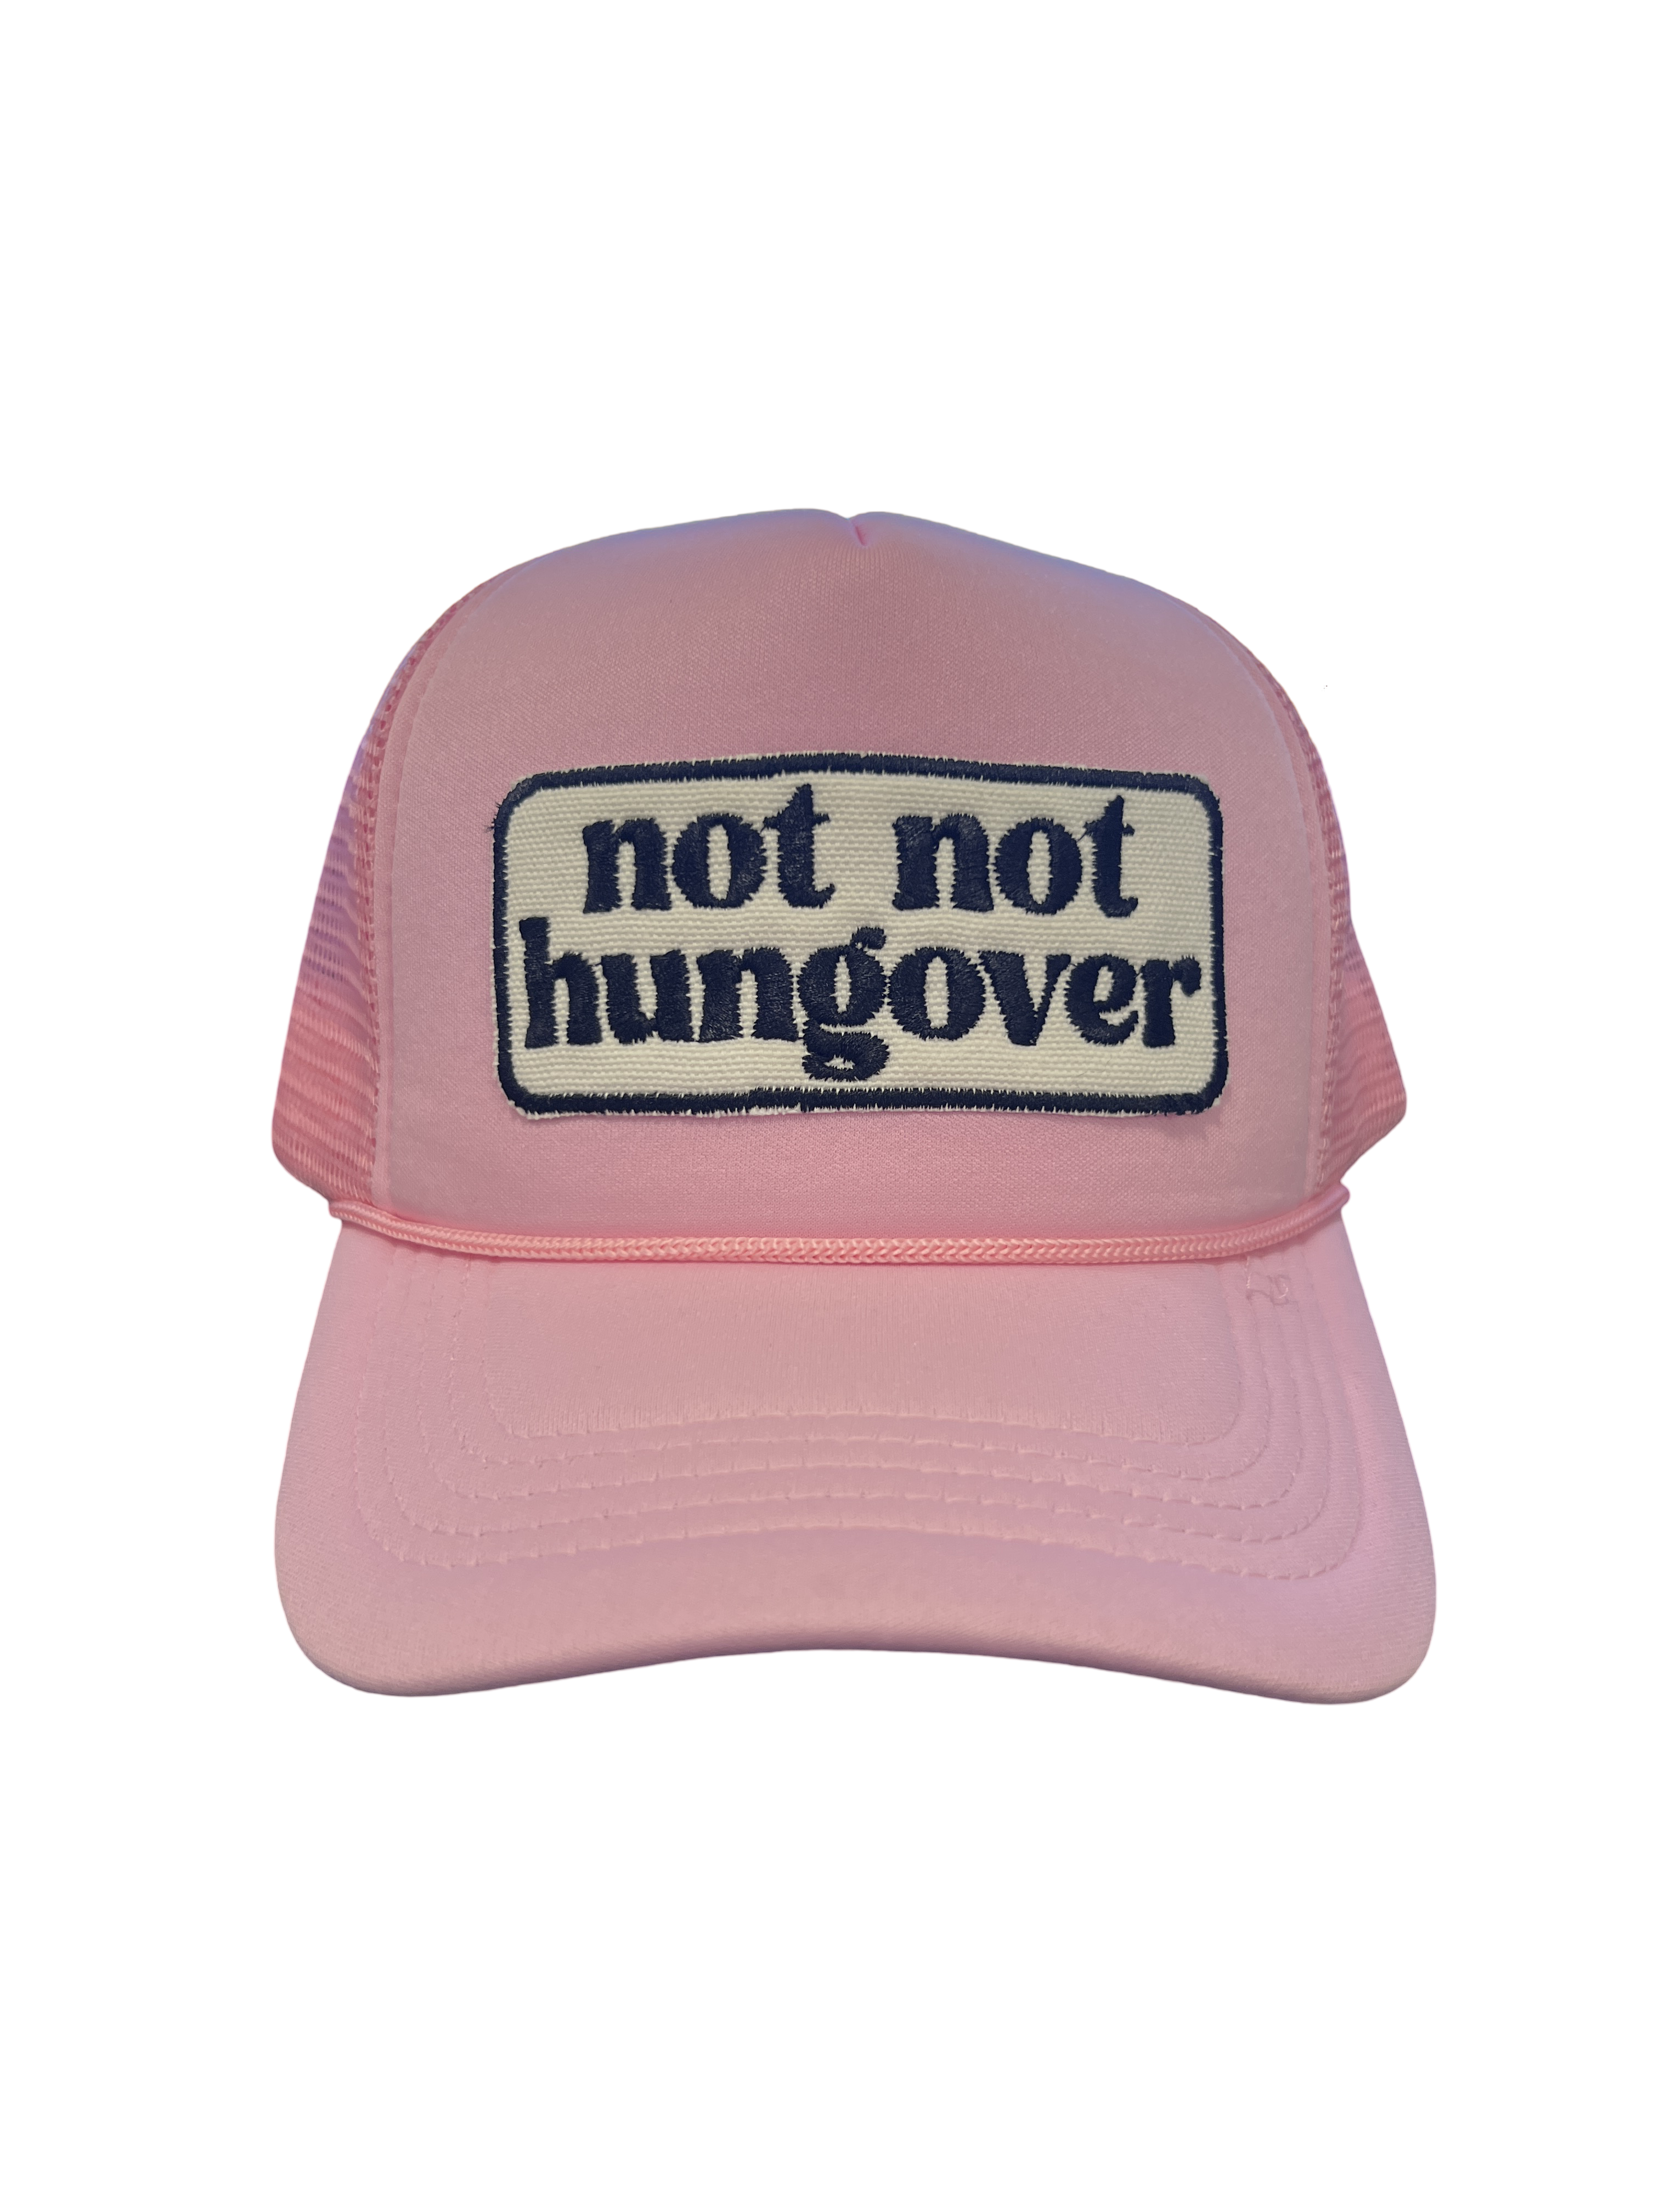 Foam Trucker Hat "Not Not Hungover"